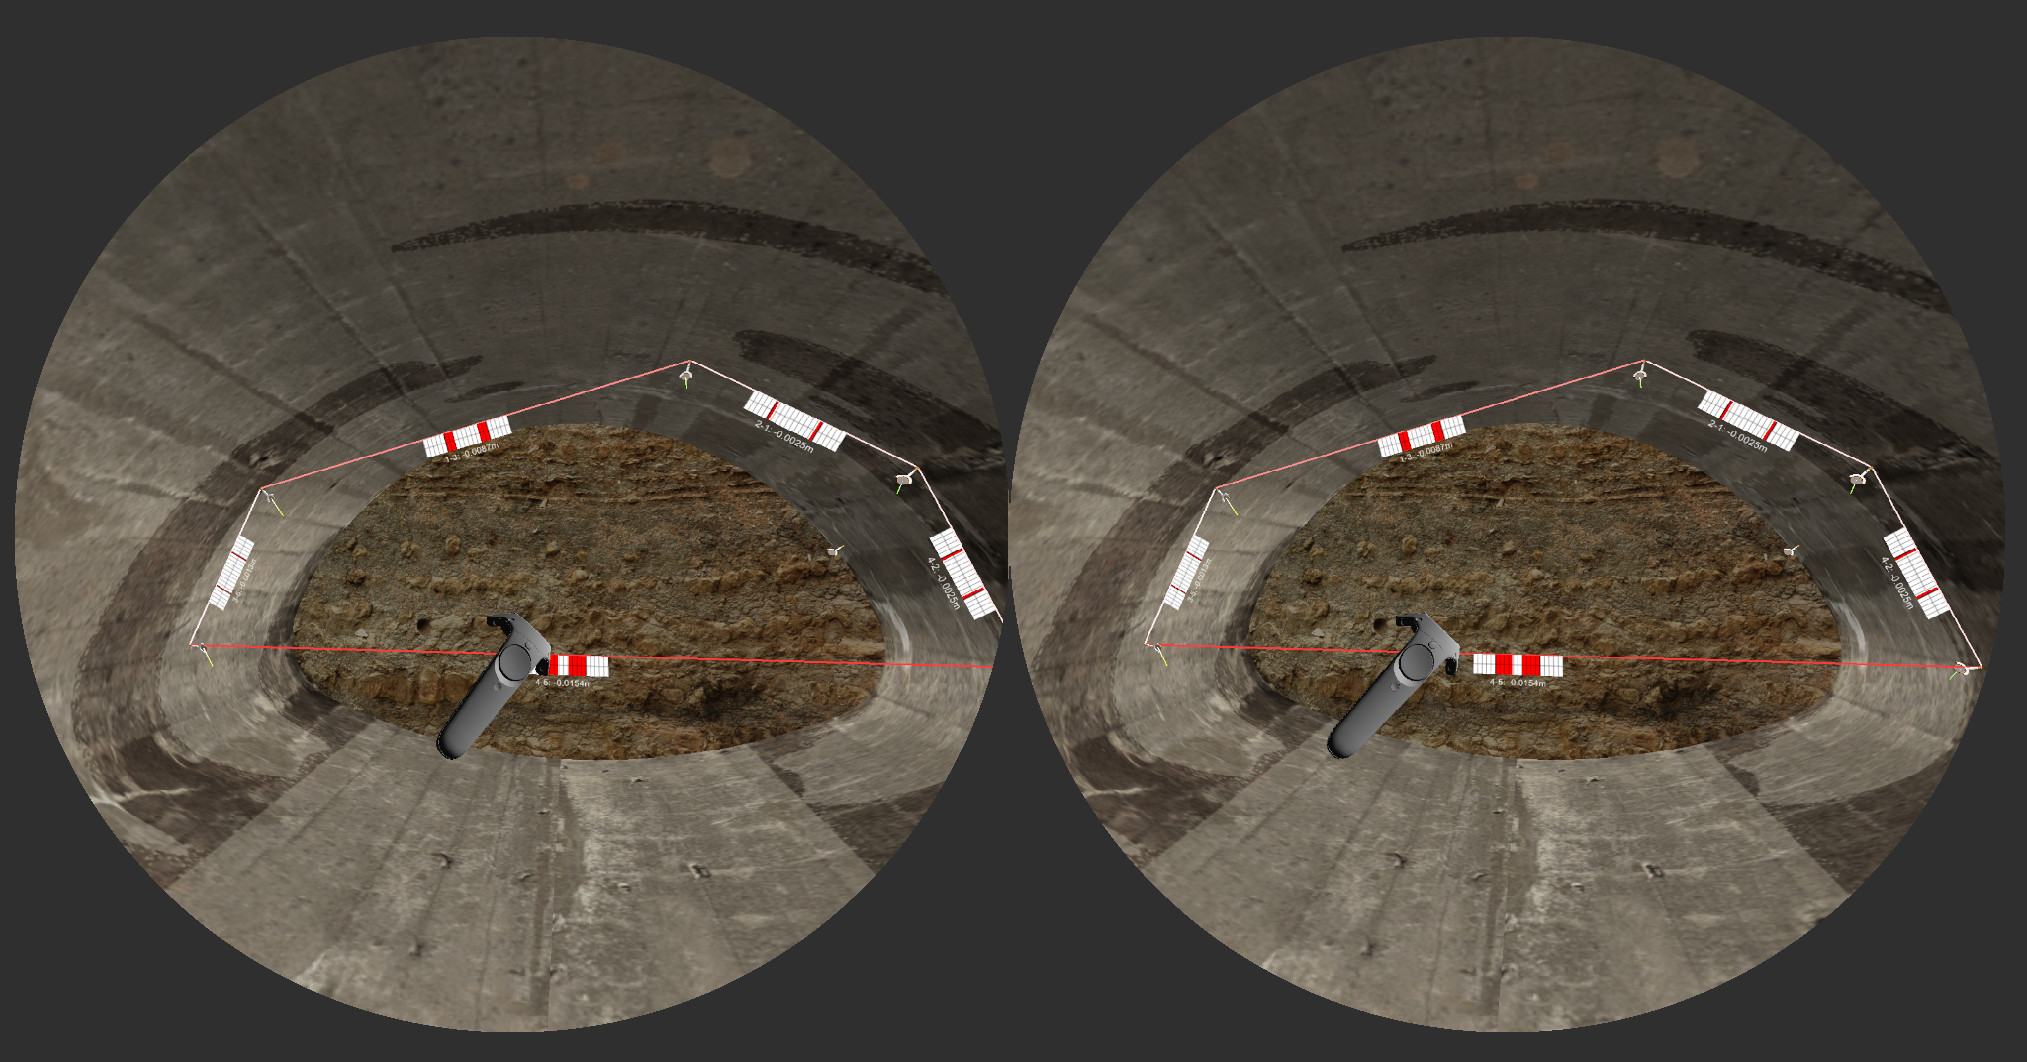 Blick durch eine Virtual Reality-Brille: im linken Kreis sieht man, was man mit dem linken Auge sieht, im rechten Kreis sieht man den Tunnel, wie man ihn mit dem rechten Auge sieht. 